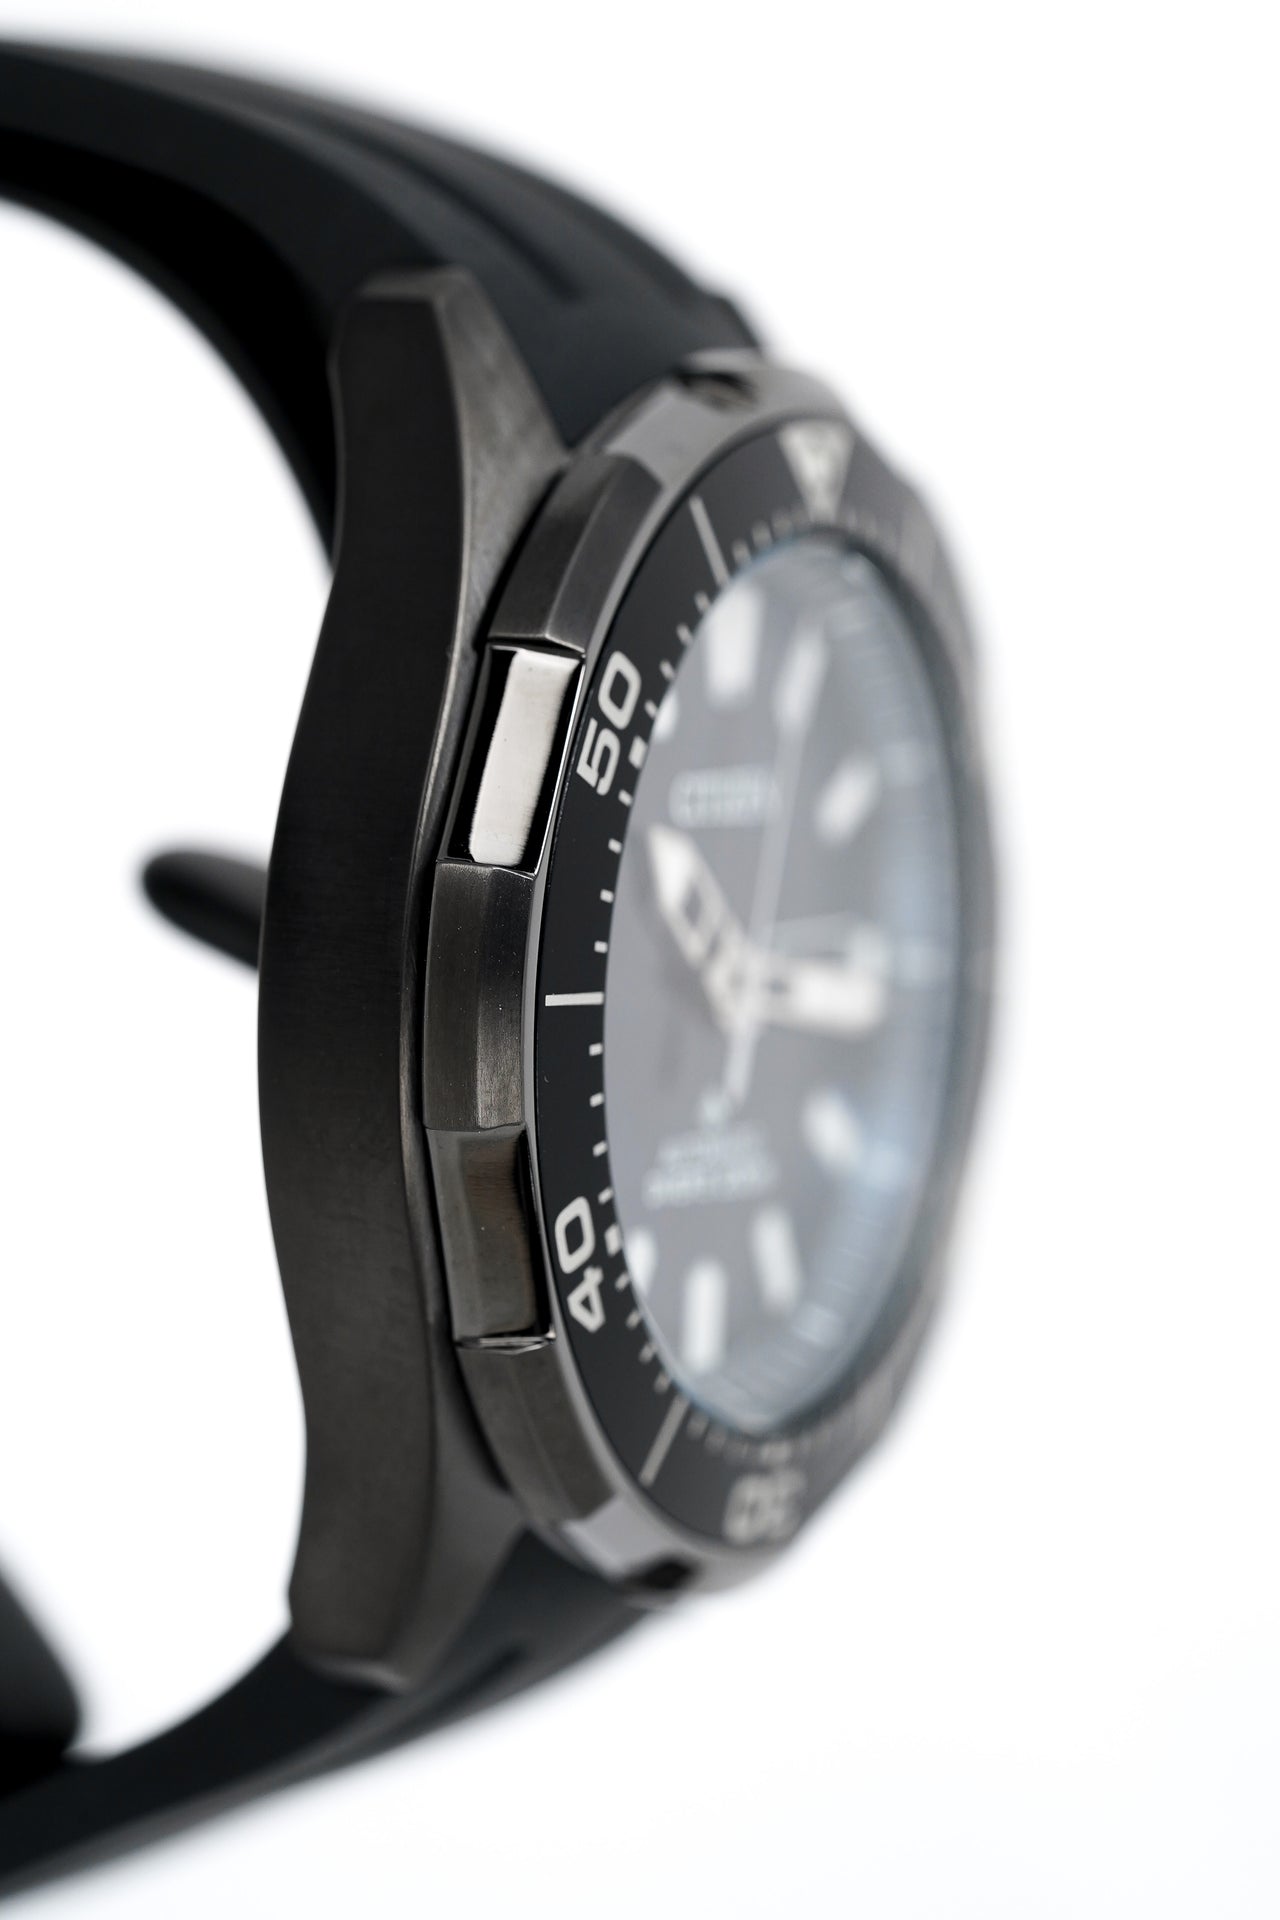 Citizen Men's Watch Automatic Promaster Dive Titanium NY0075-12L